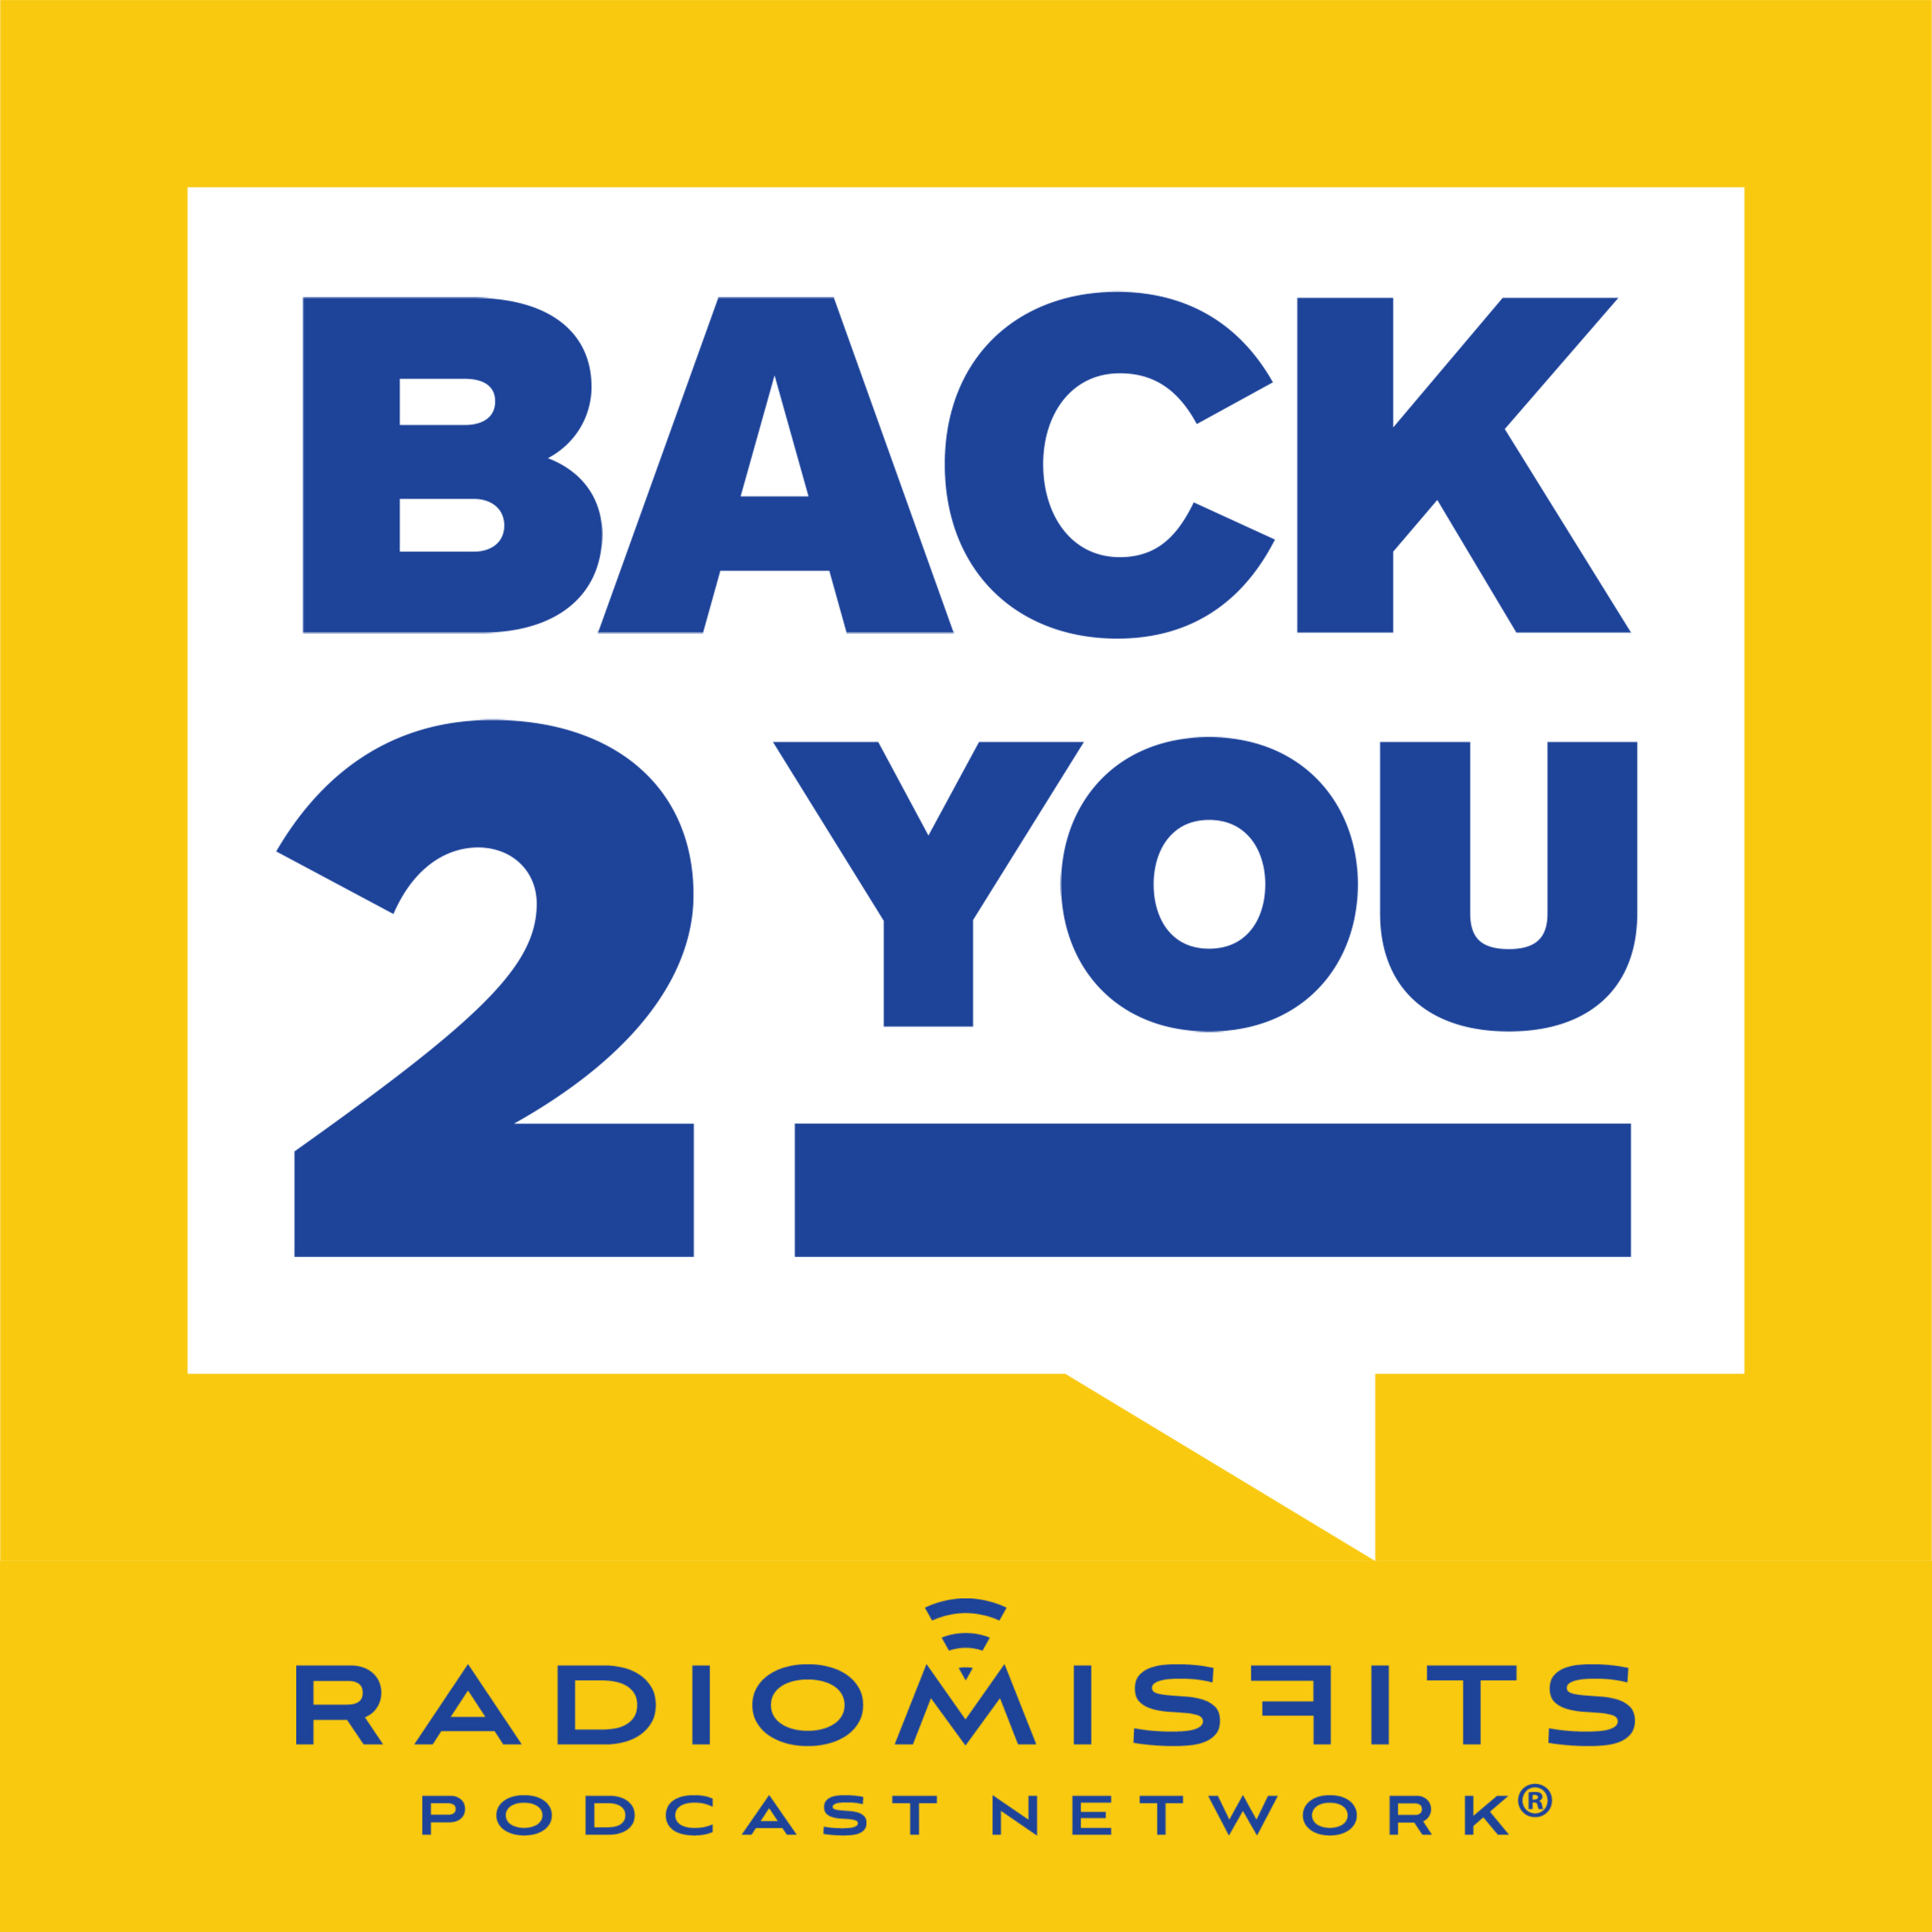 Back 2 You! on Radio Misfits